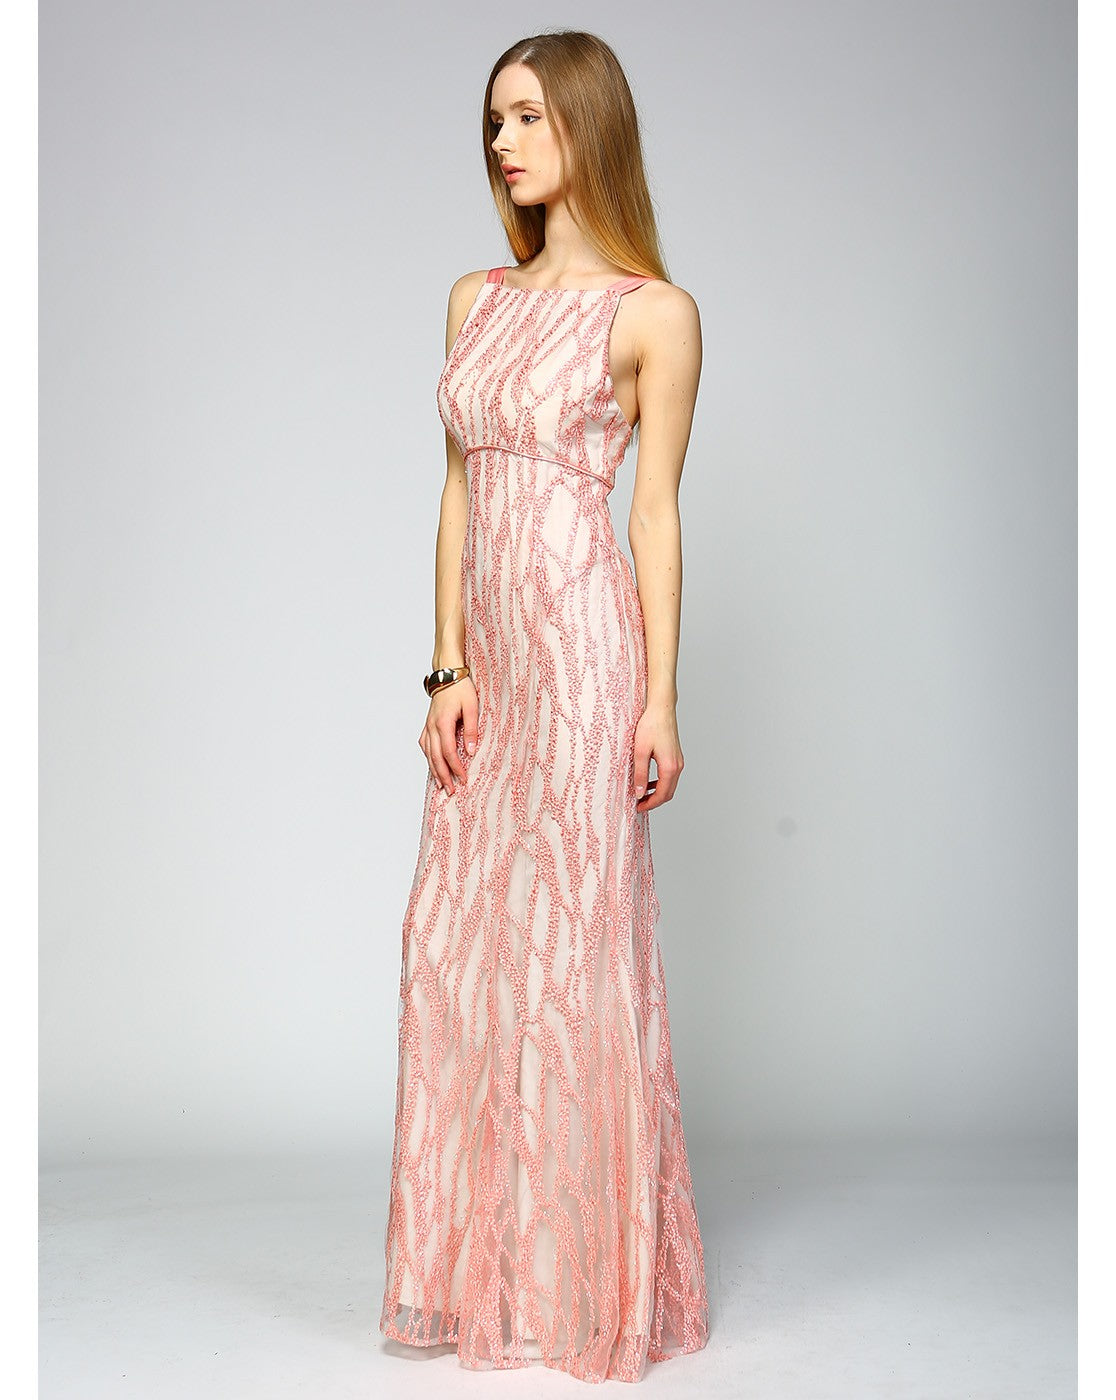 Minuet Maxi Long Wavy Embroidered Dress PinkOrchidFashion